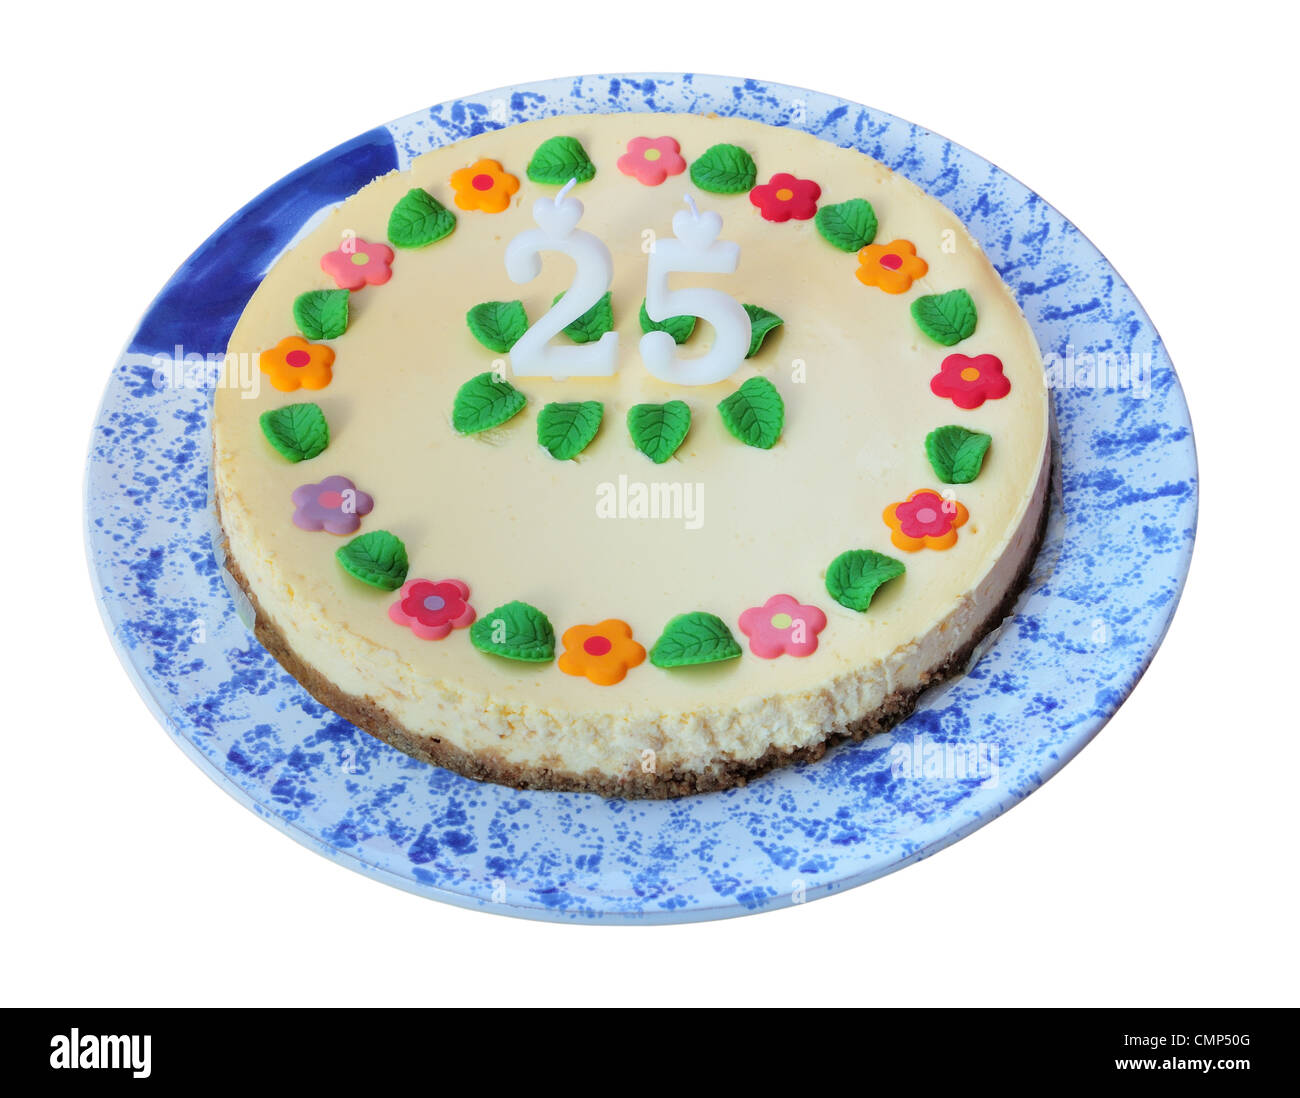 Compleanno torta di formaggio con candele (25), isolata su bianco. Foto Stock